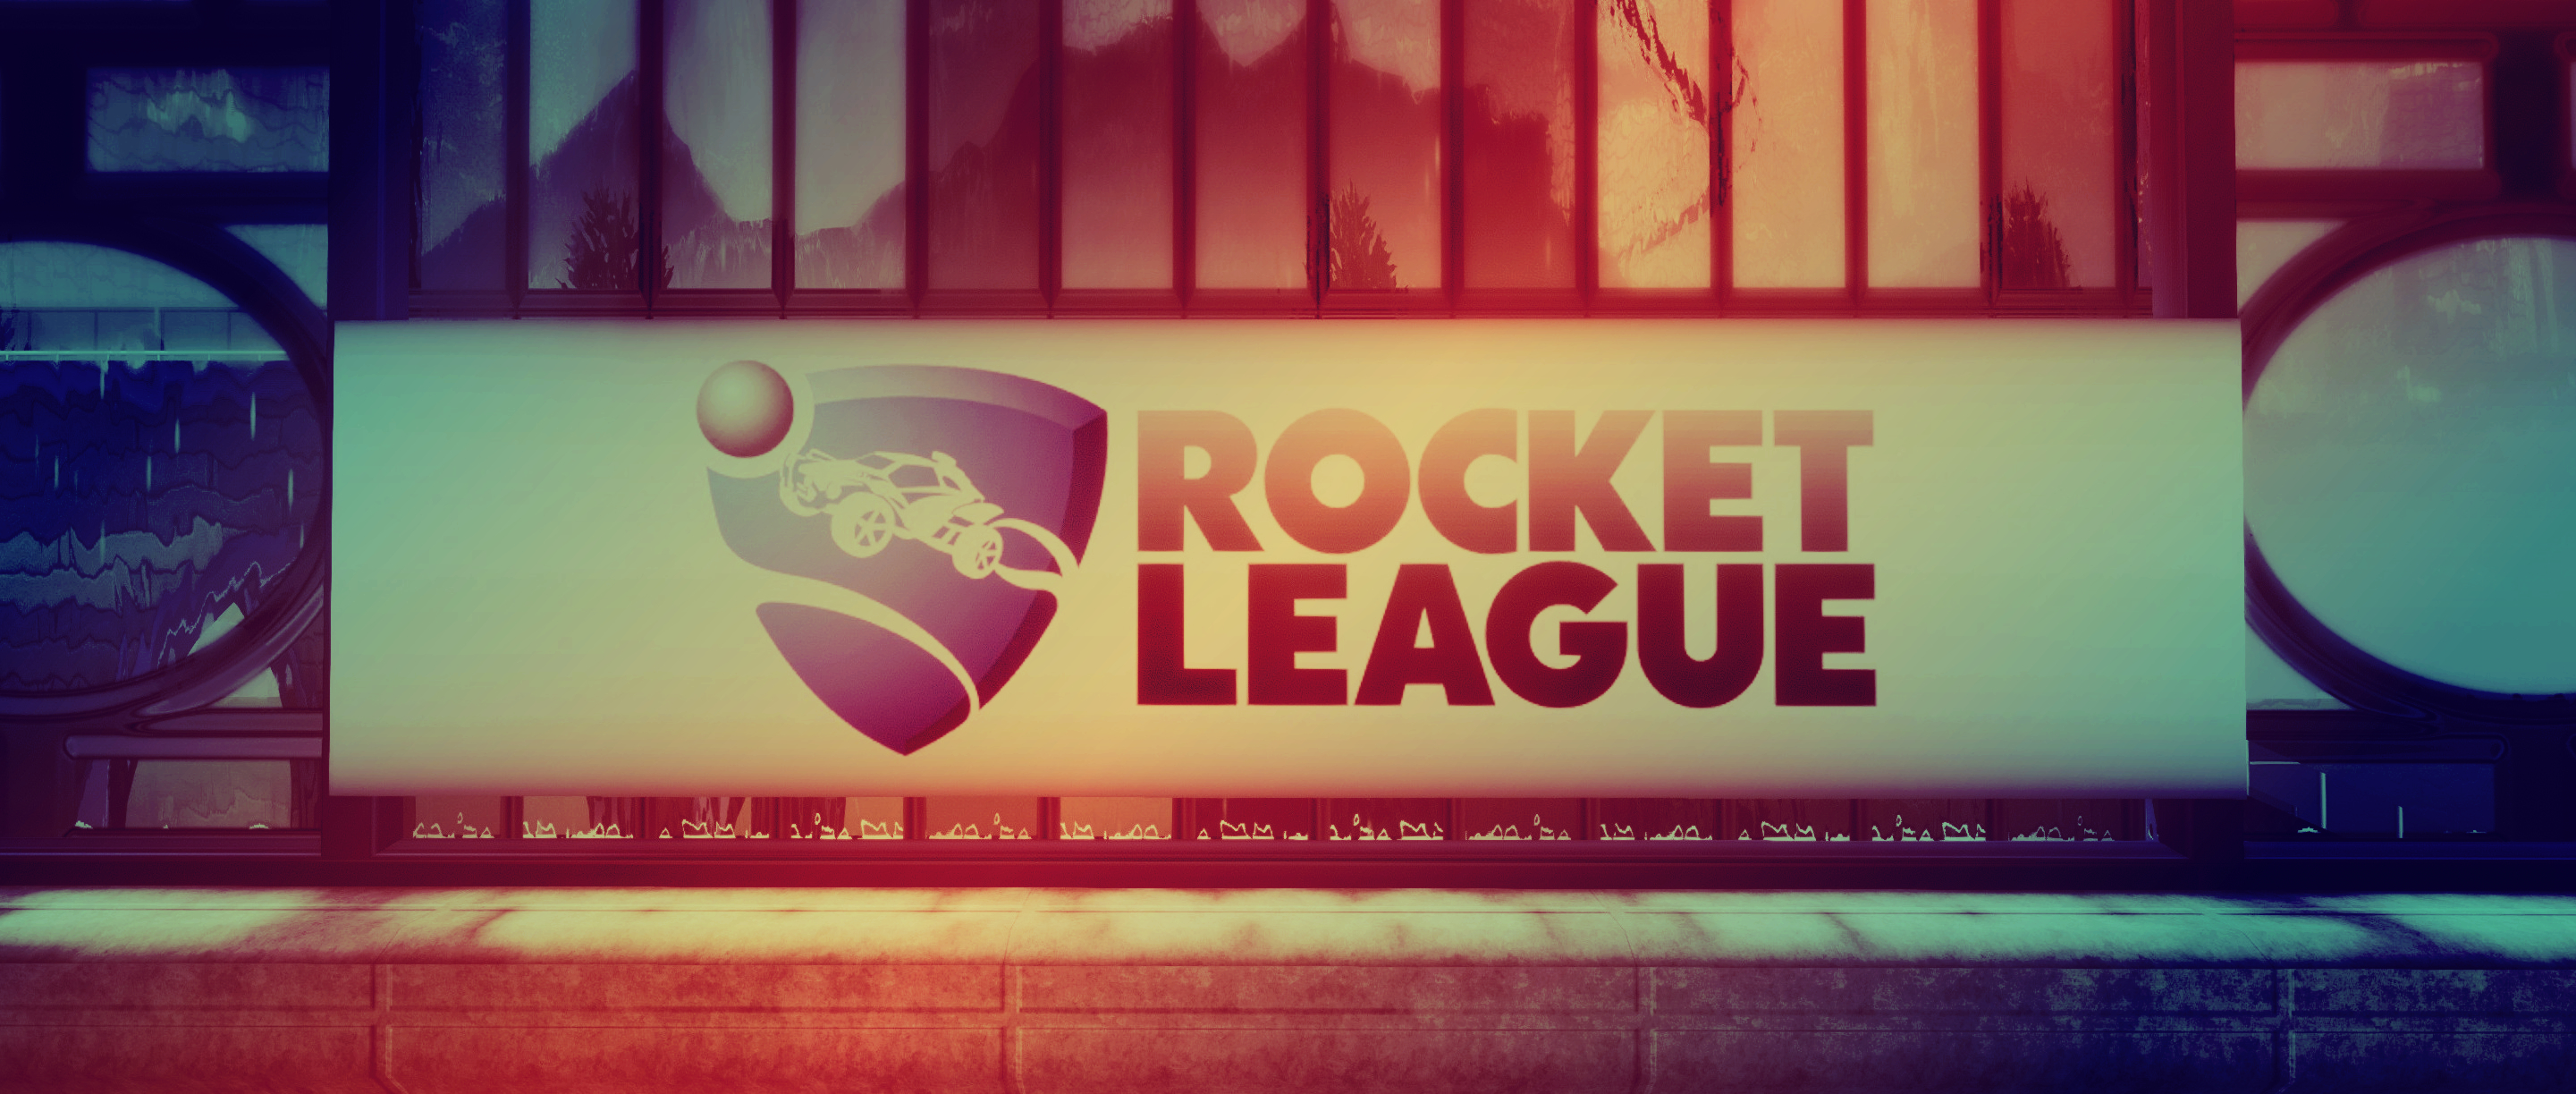 828605 descargar imagen rocket league, videojuego: fondos de pantalla y protectores de pantalla gratis